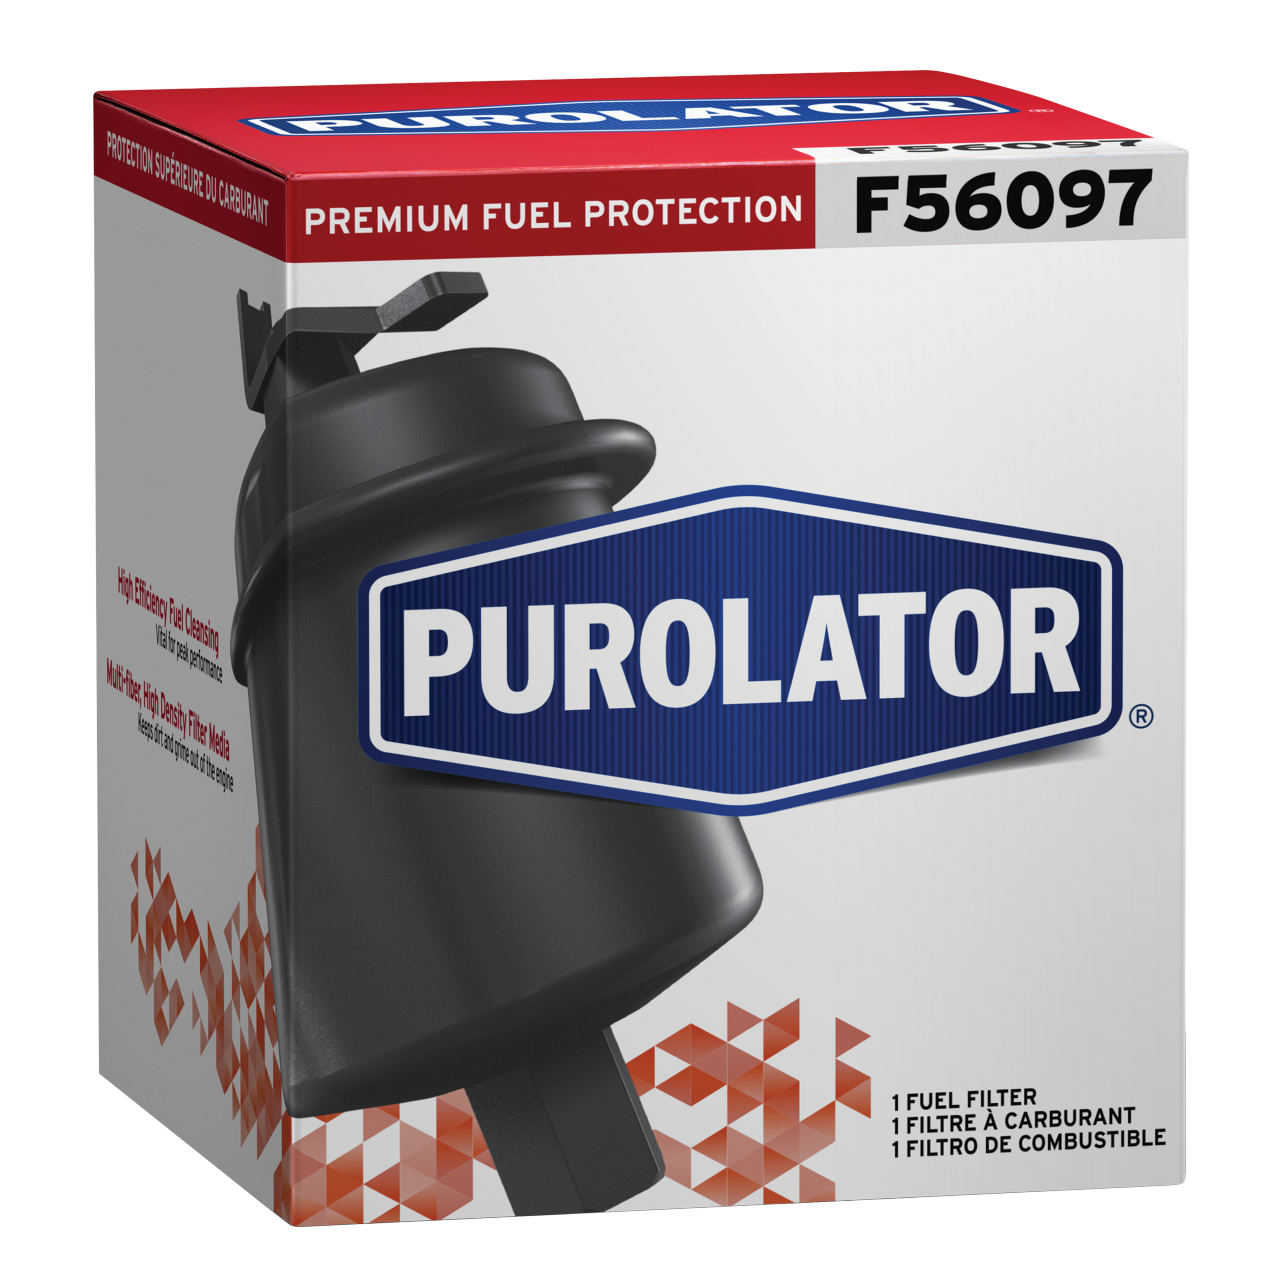 Proteja las bombas e inyectores de combustible y evite costosos problemas con el motor cambiando el filtro de gasolina por un filtro de combustible Purolator.